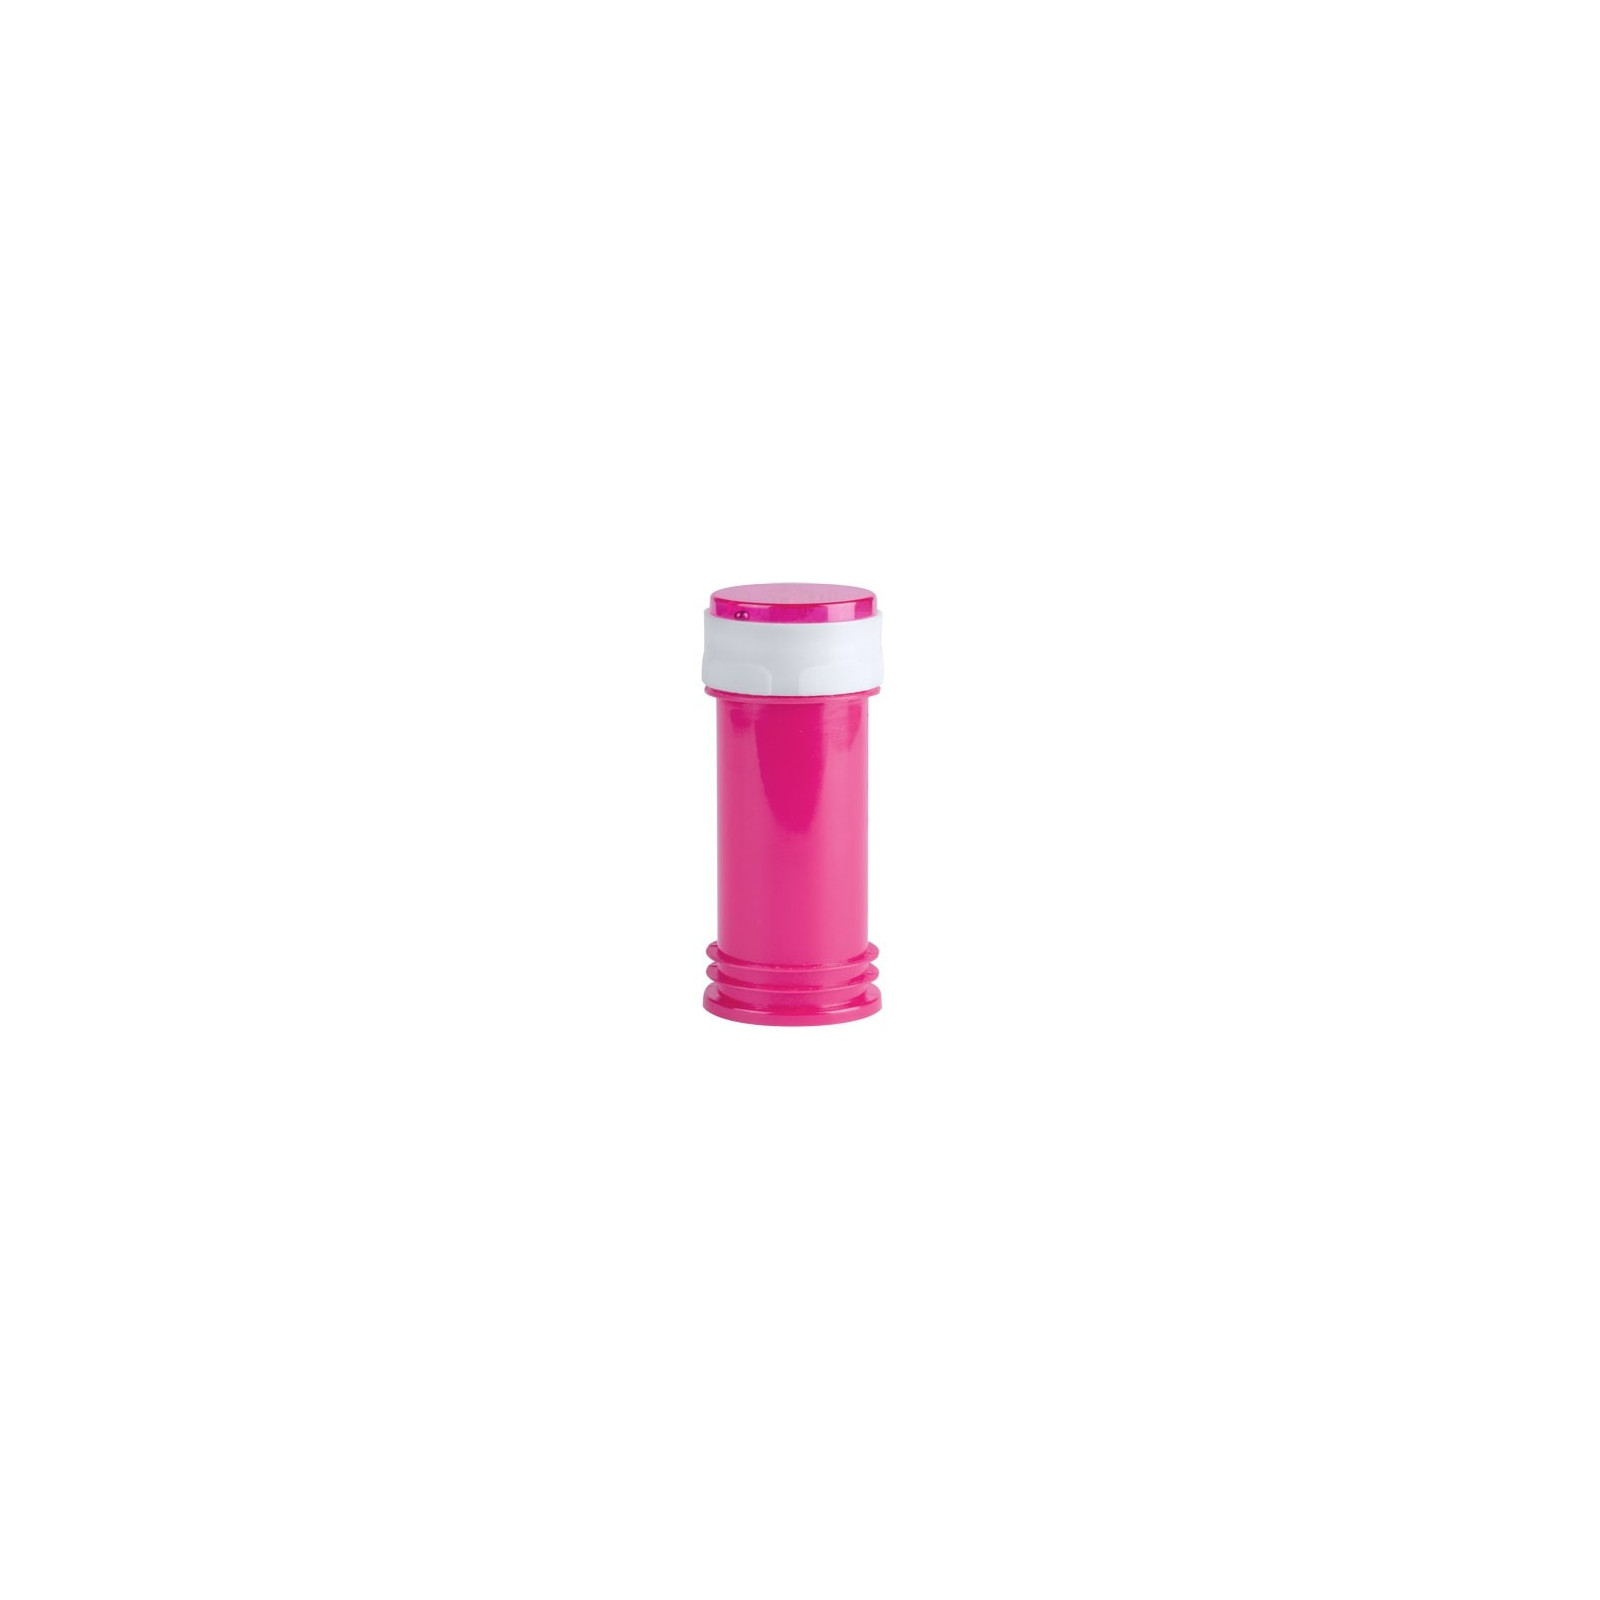 Pompero barato rosa (sin jabón)